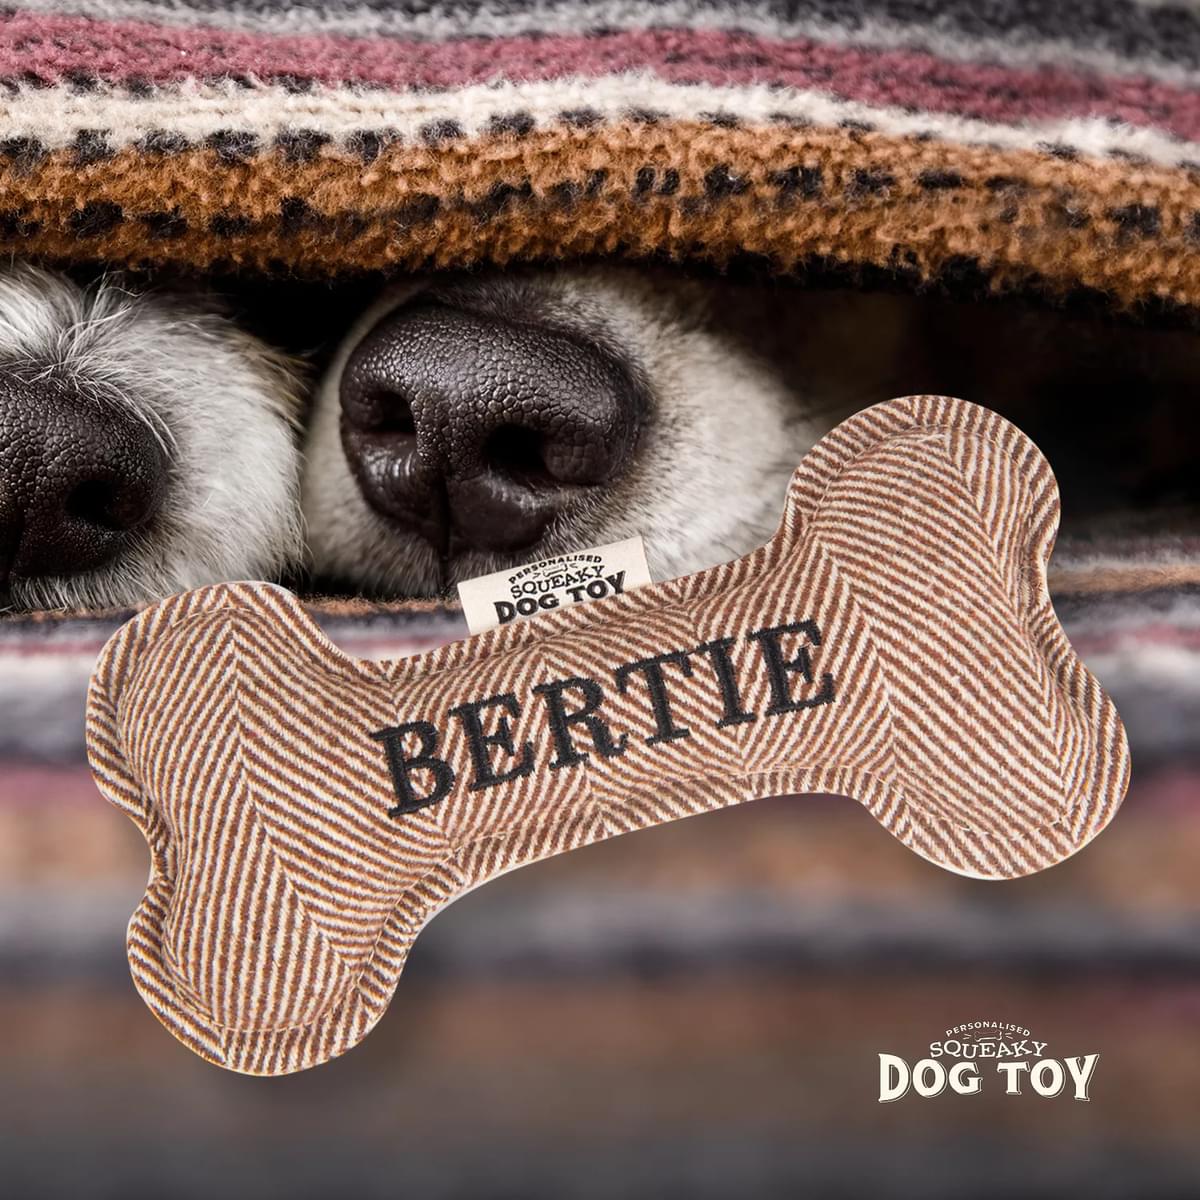 Named Squeaky Dog Toy- Bertie. Bone shaped herringbone tweed pattern dog toy. 